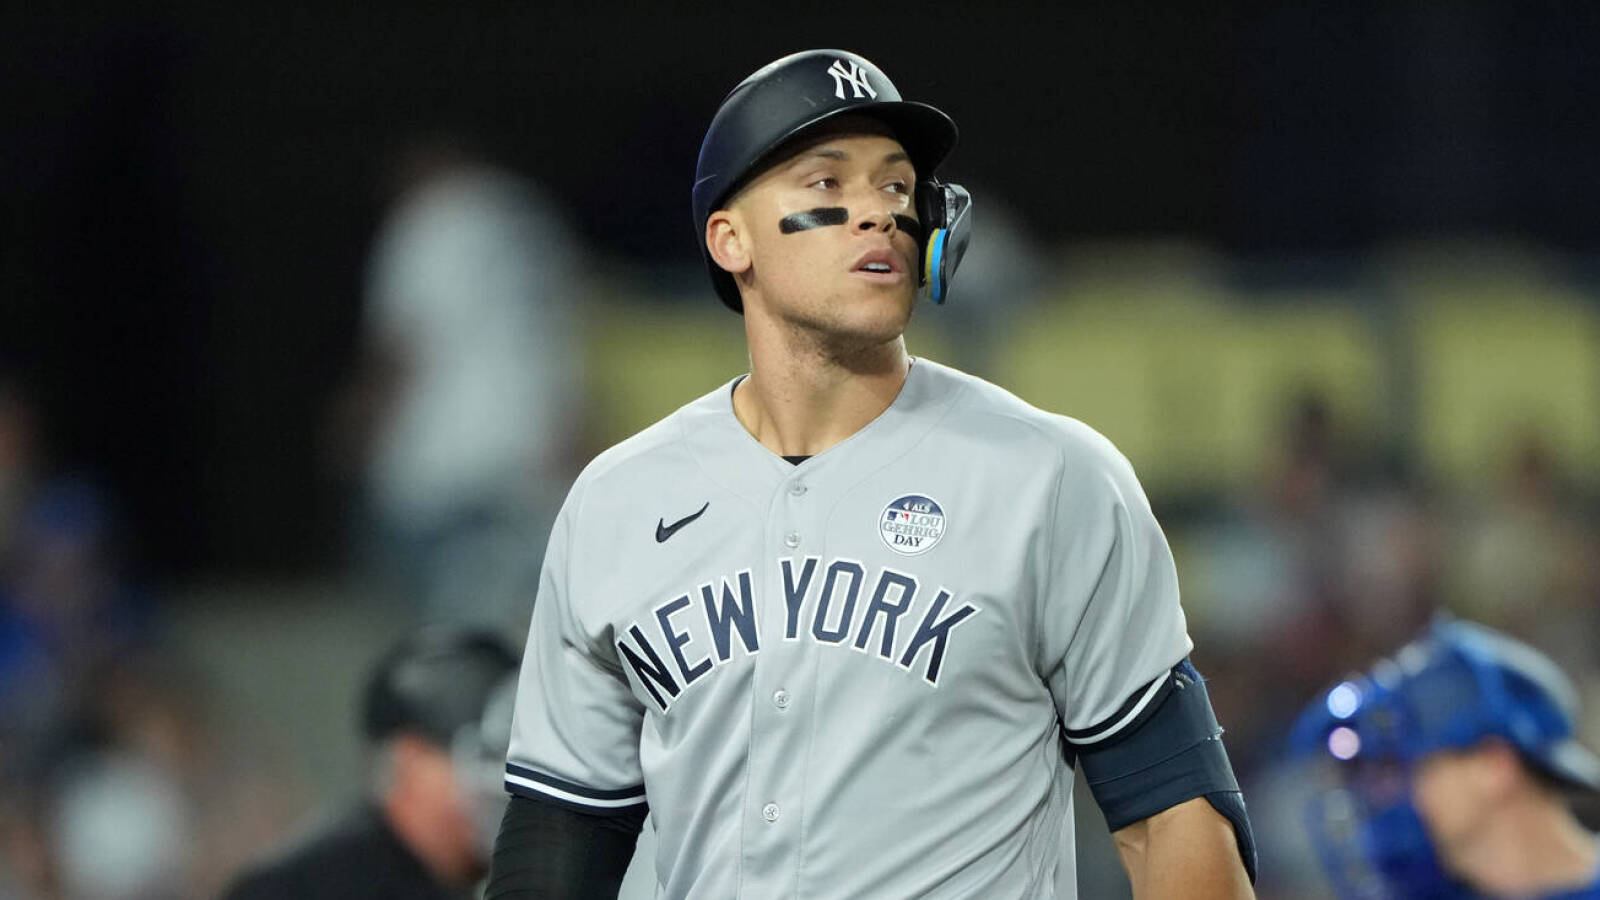 Yankees' Aaron Judge shares alarming injury update